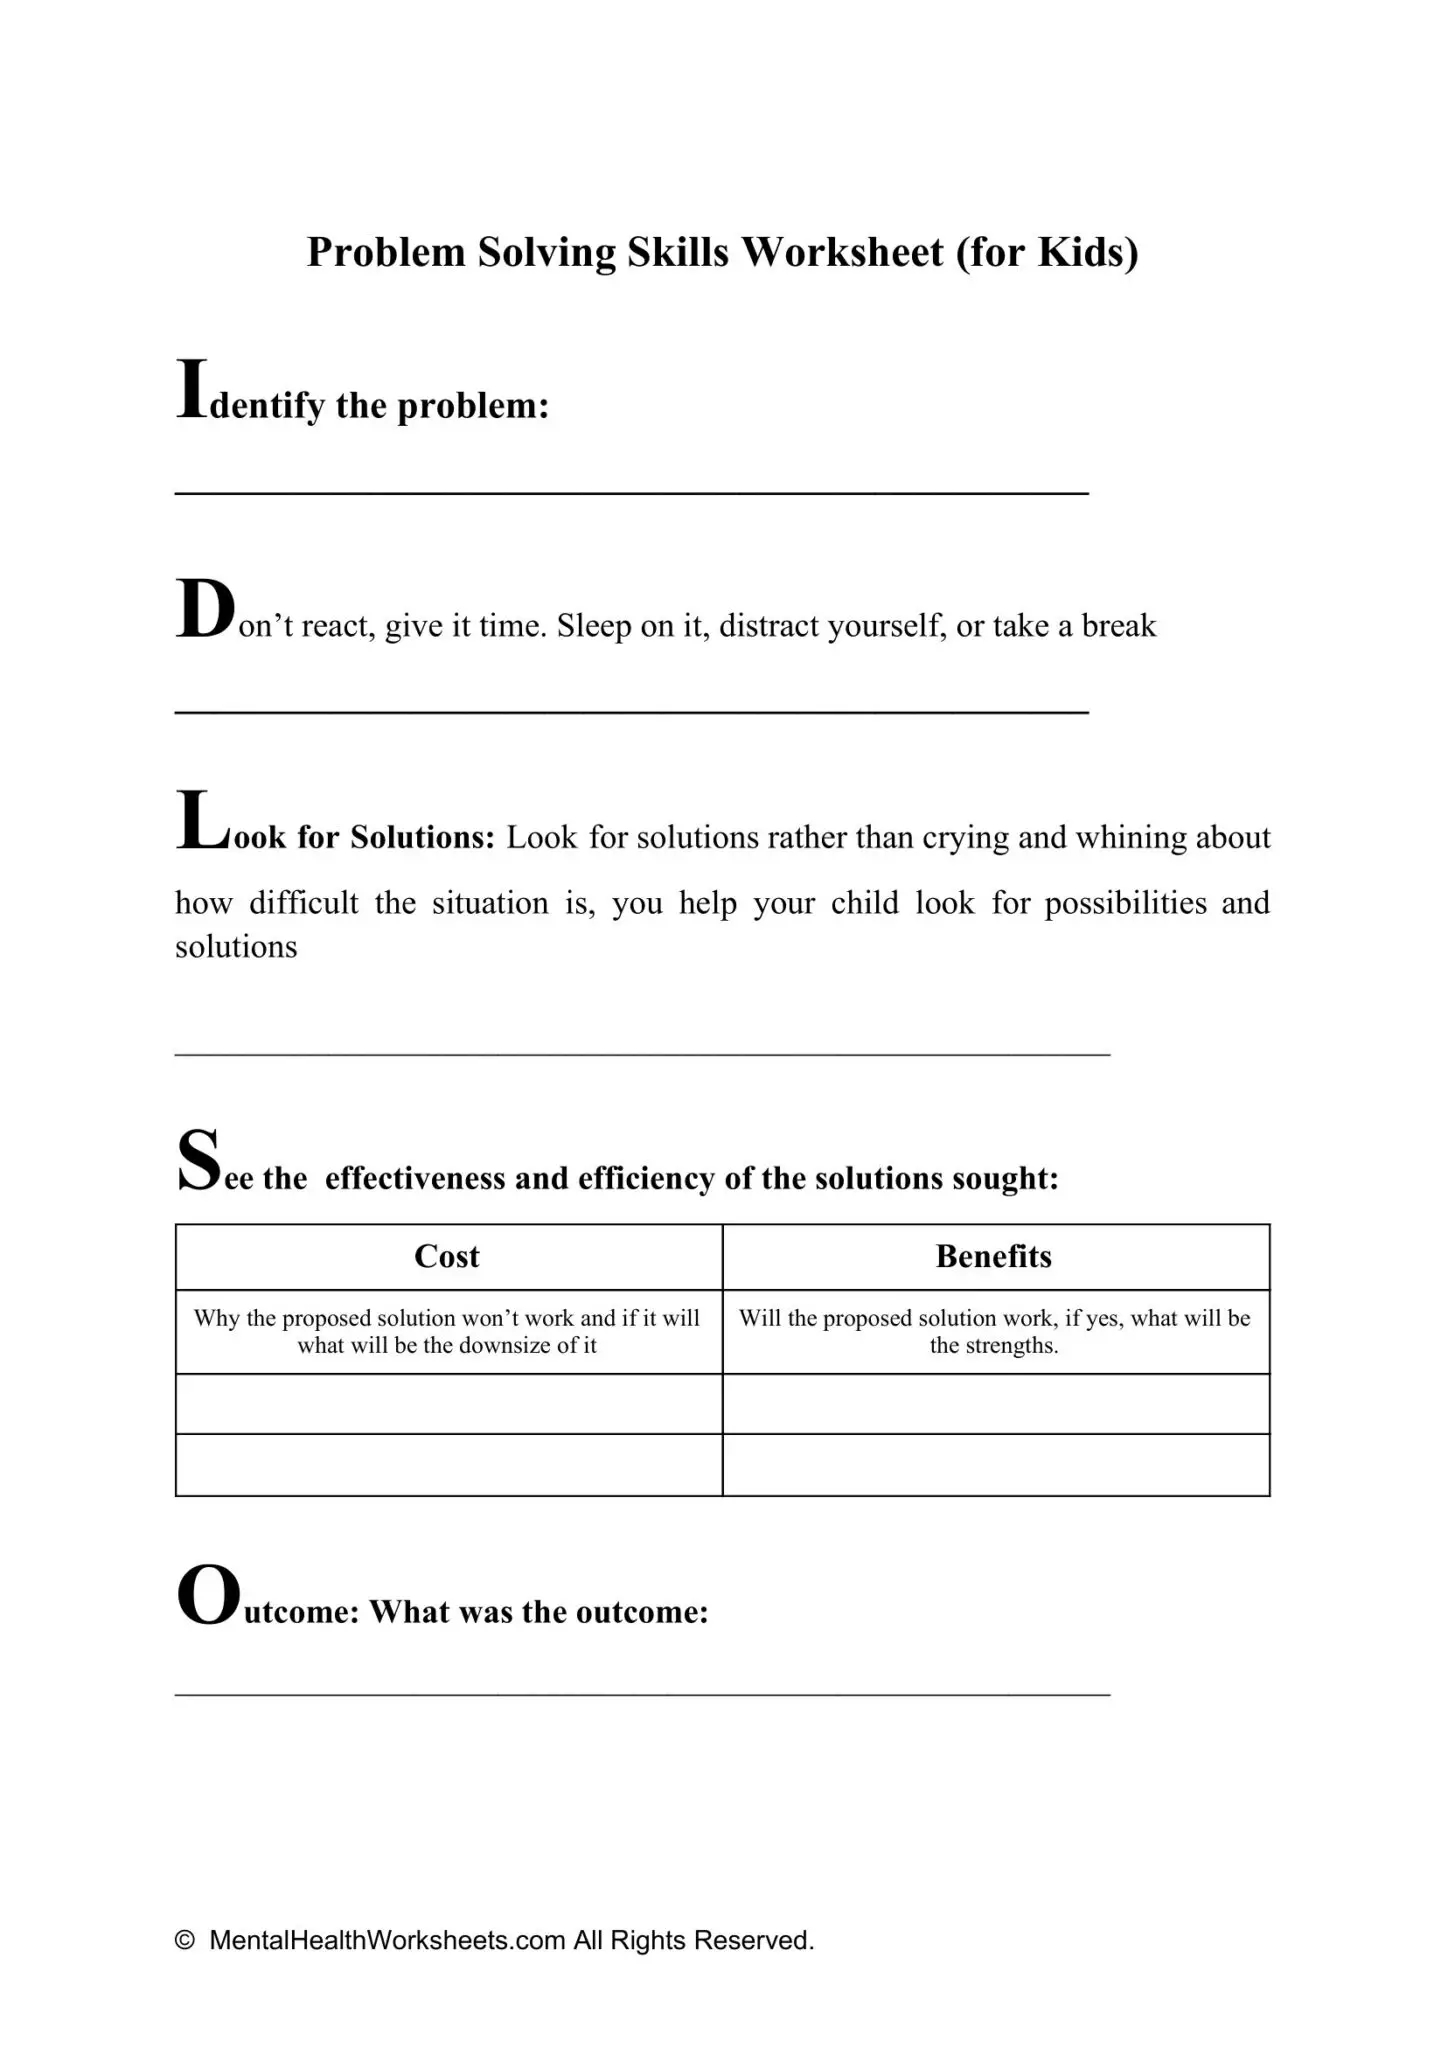 Problem Solving Skills Worksheet for Kids Mental Health Worksheets